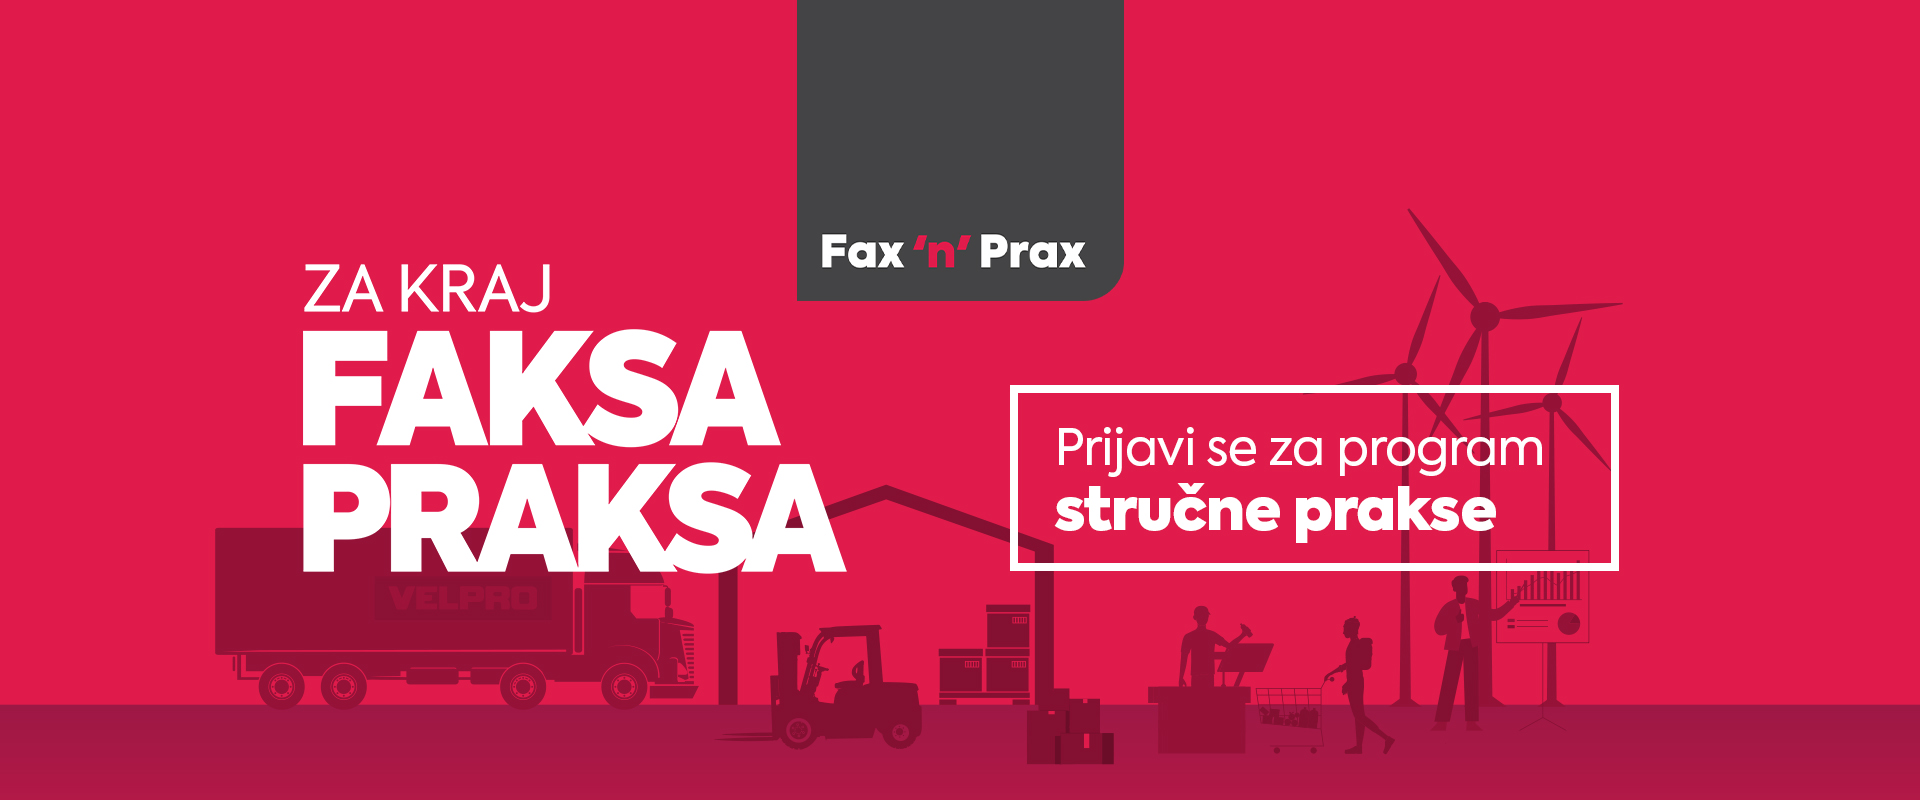 Fax ’n’ prax